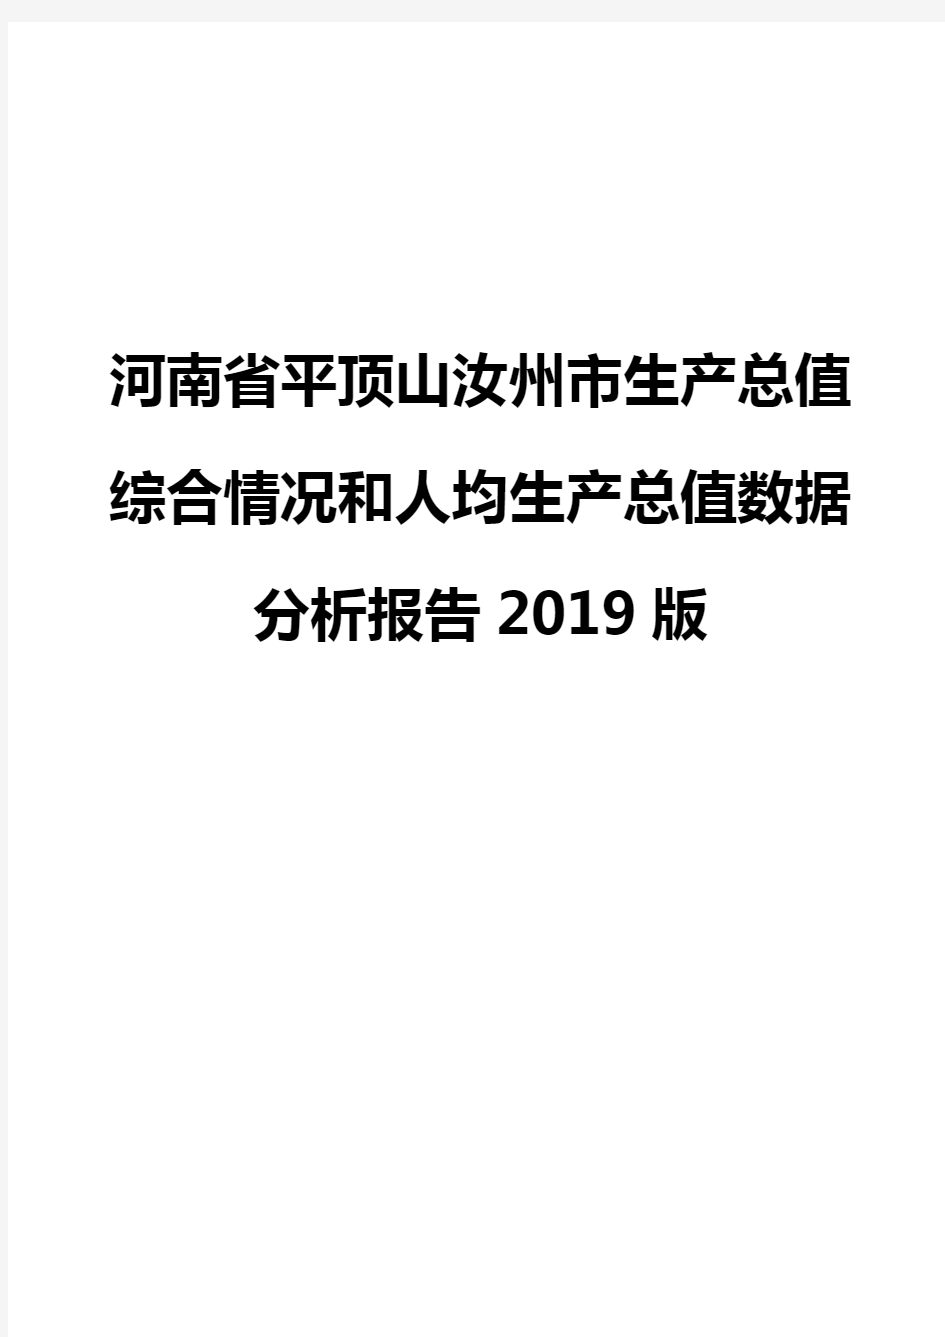 河南省平顶山汝州市生产总值综合情况和人均生产总值数据分析报告2019版